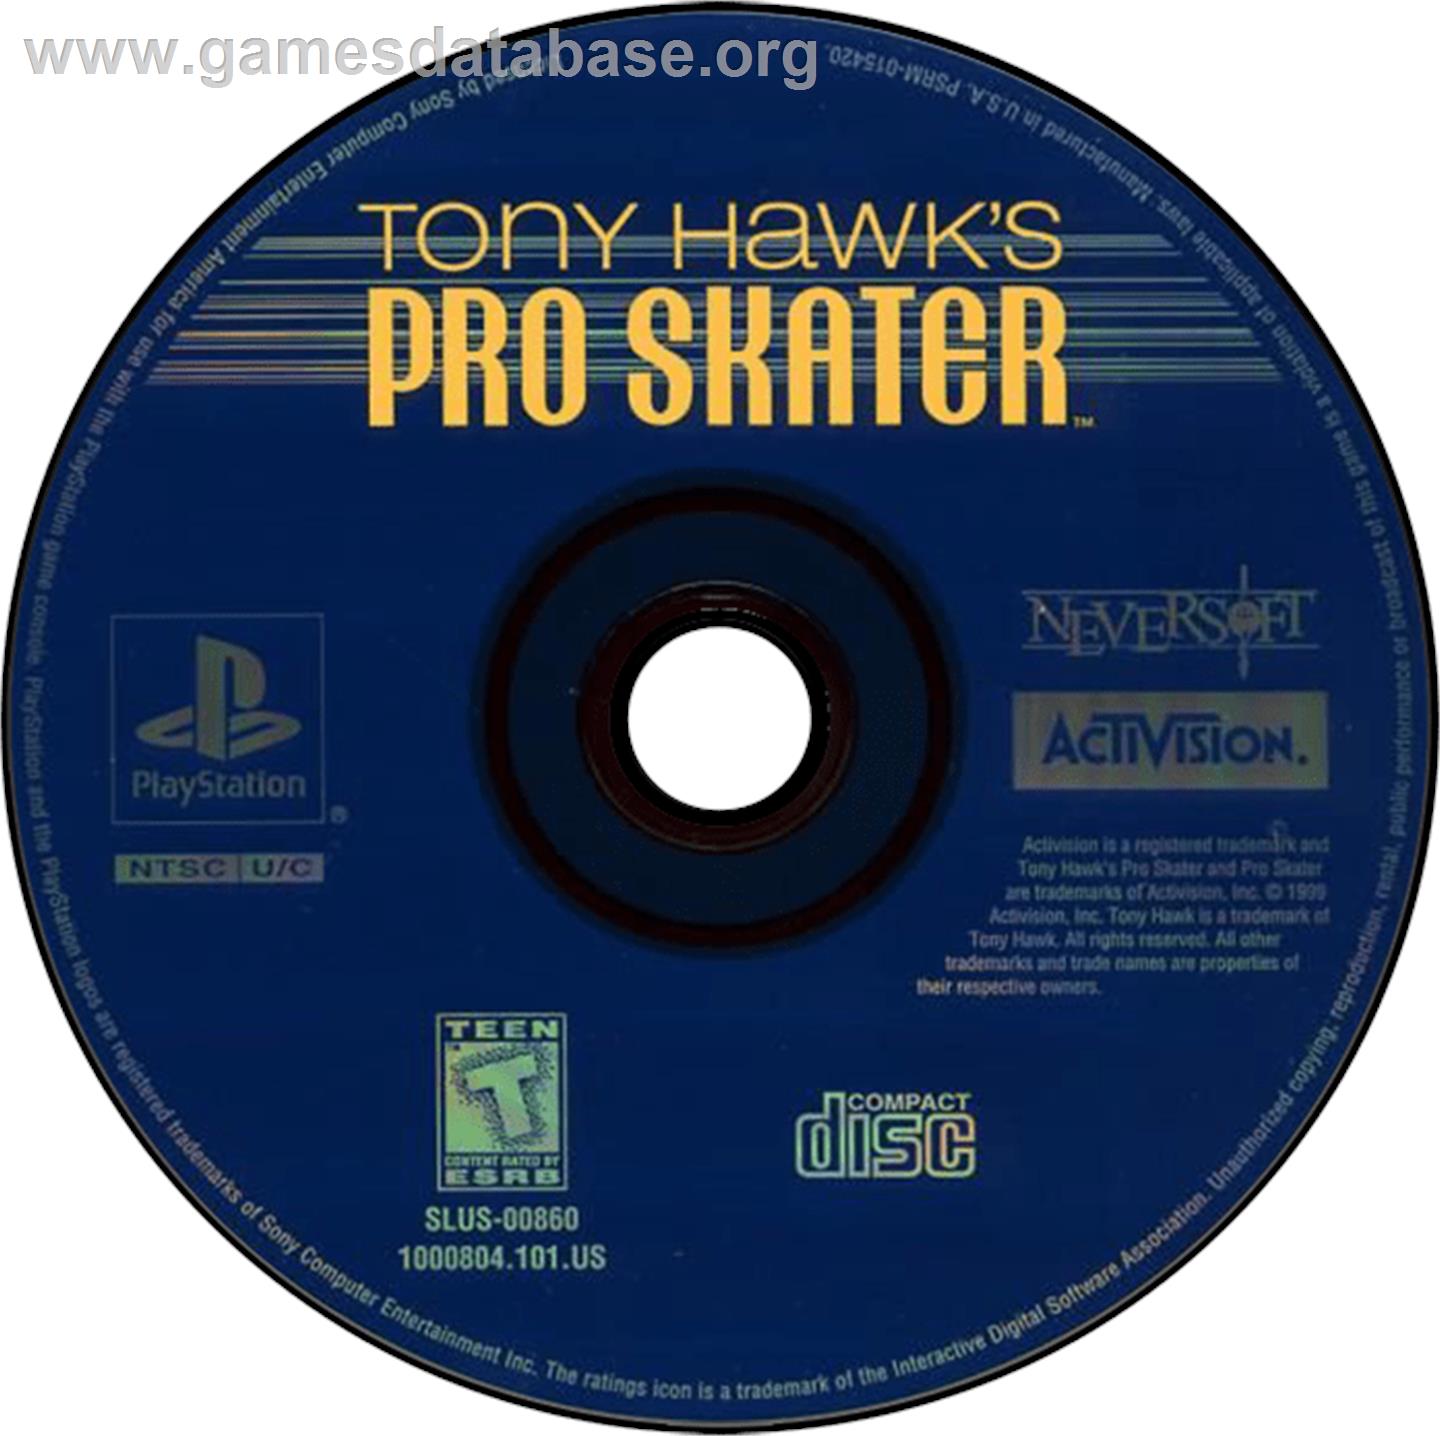 Tony Hawk's Pro Skater - Sony Playstation - Artwork - Disc